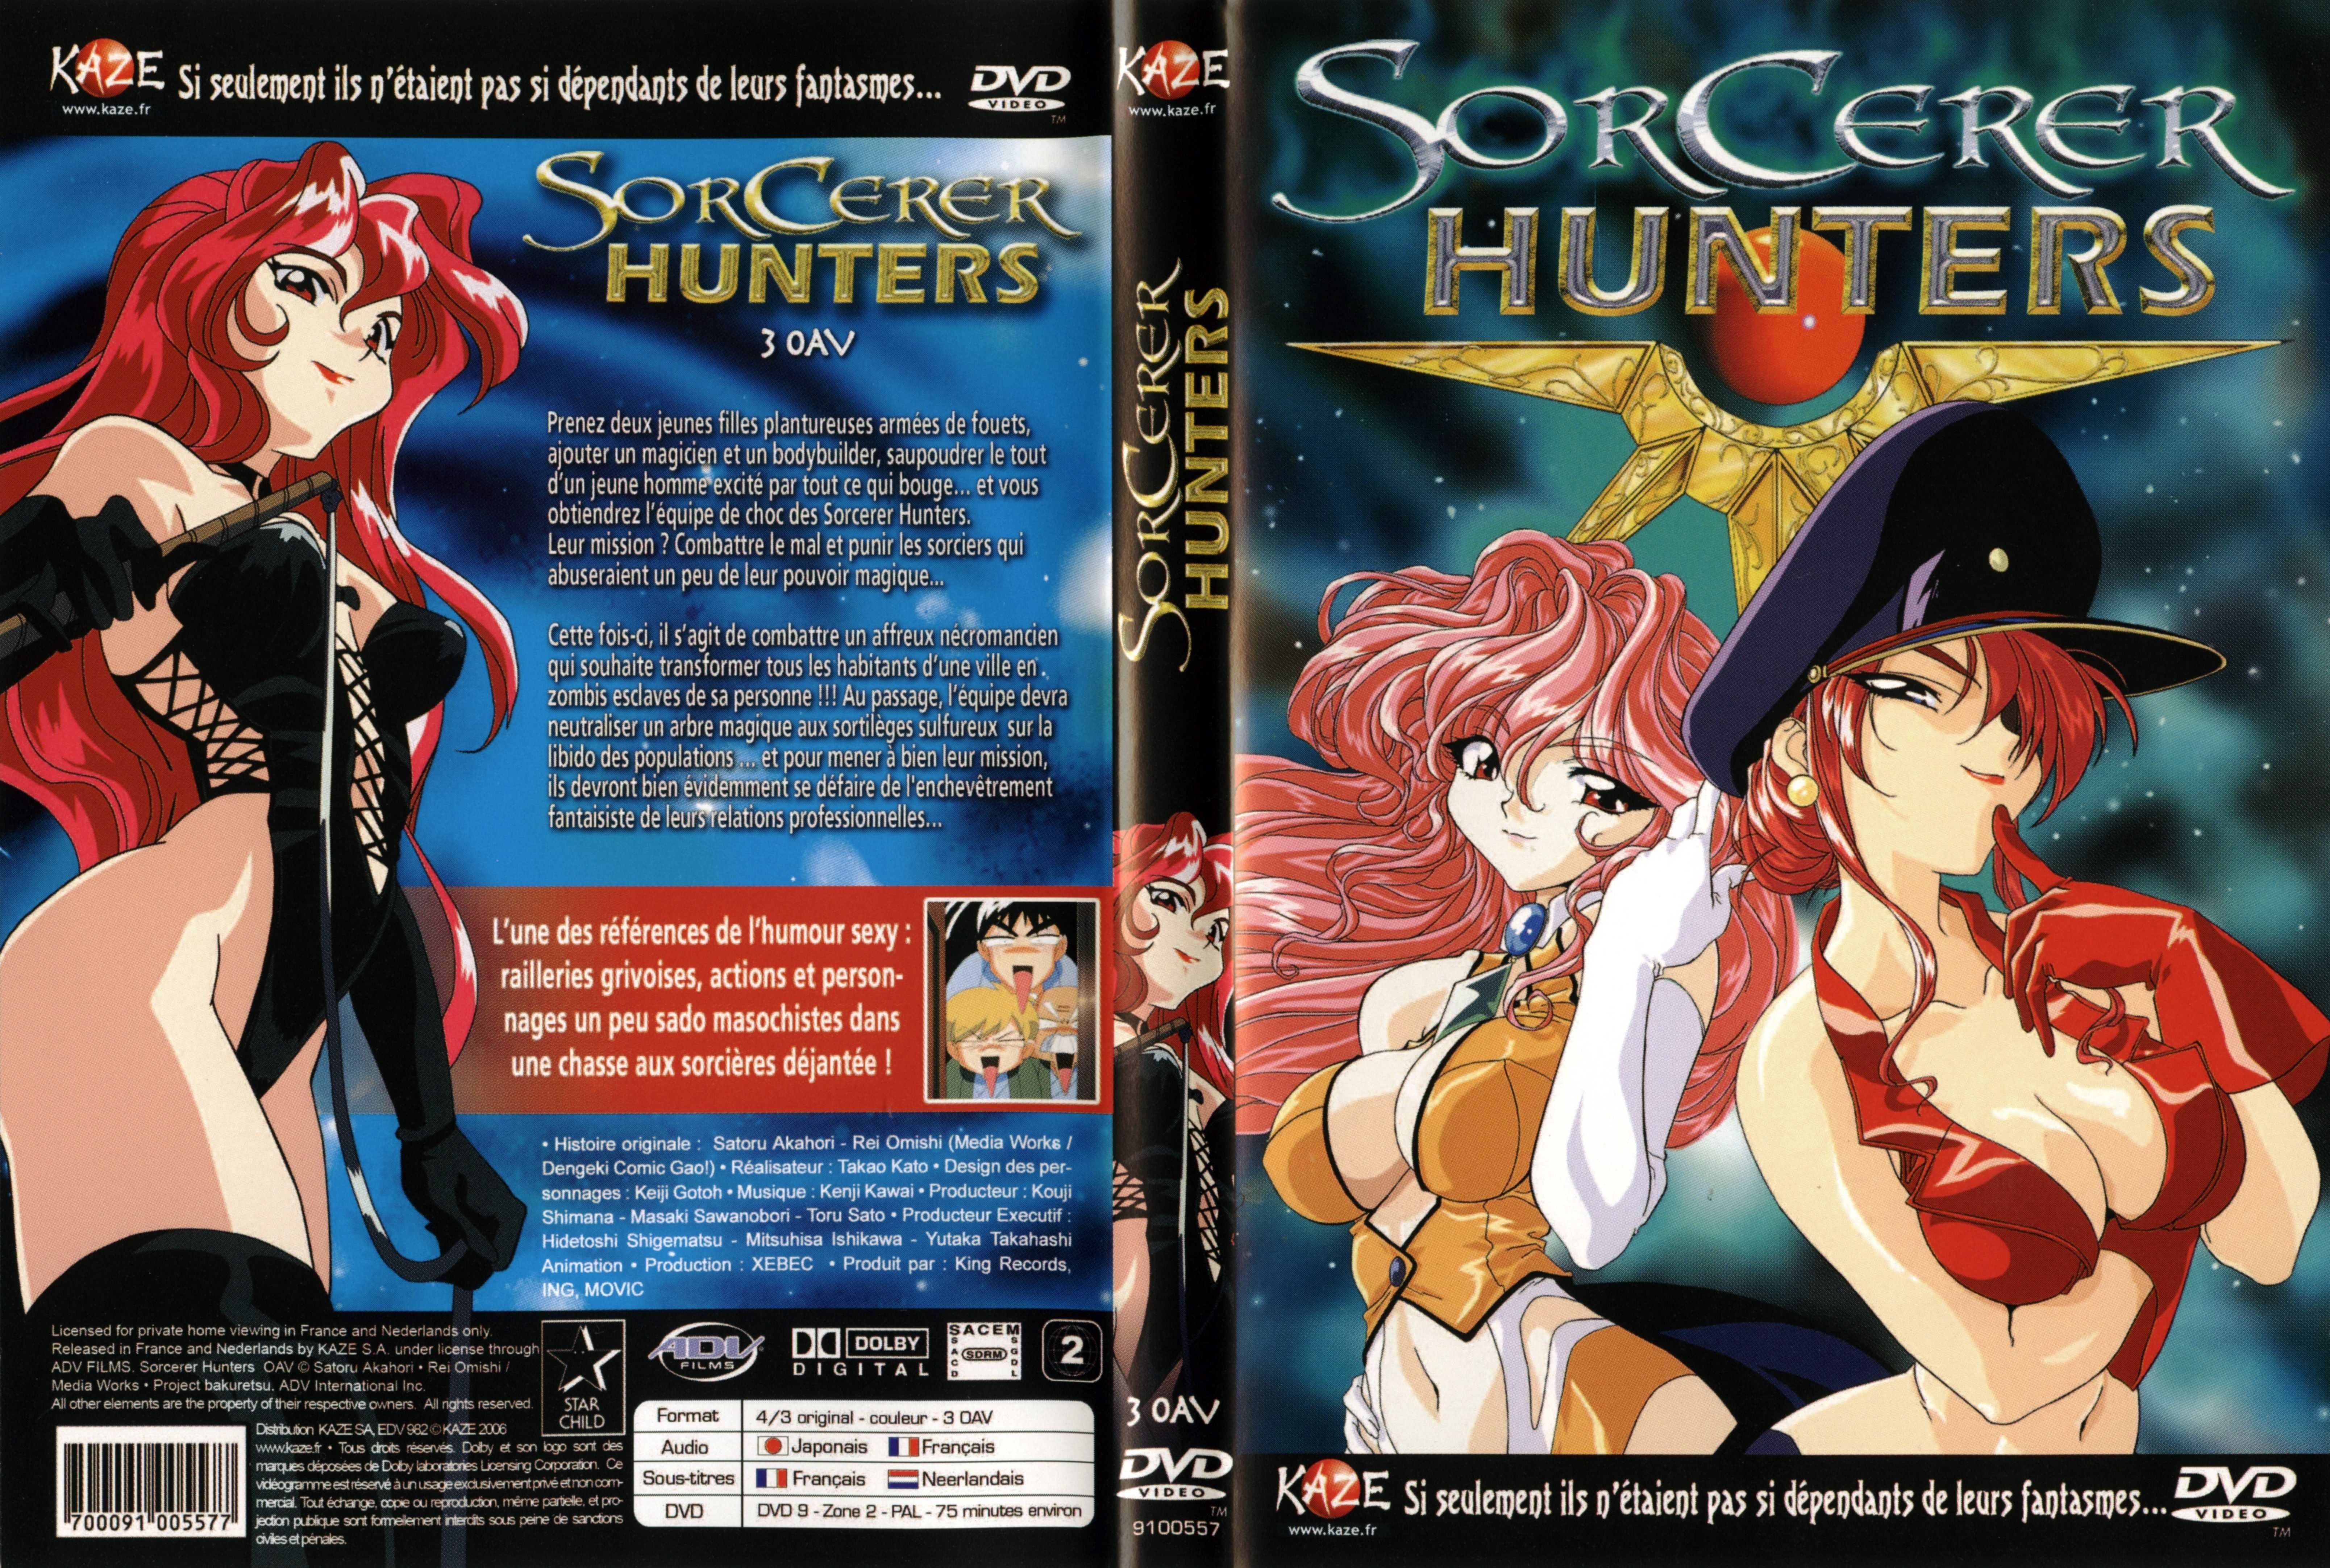 Jaquette DVD Sorcerer hunters